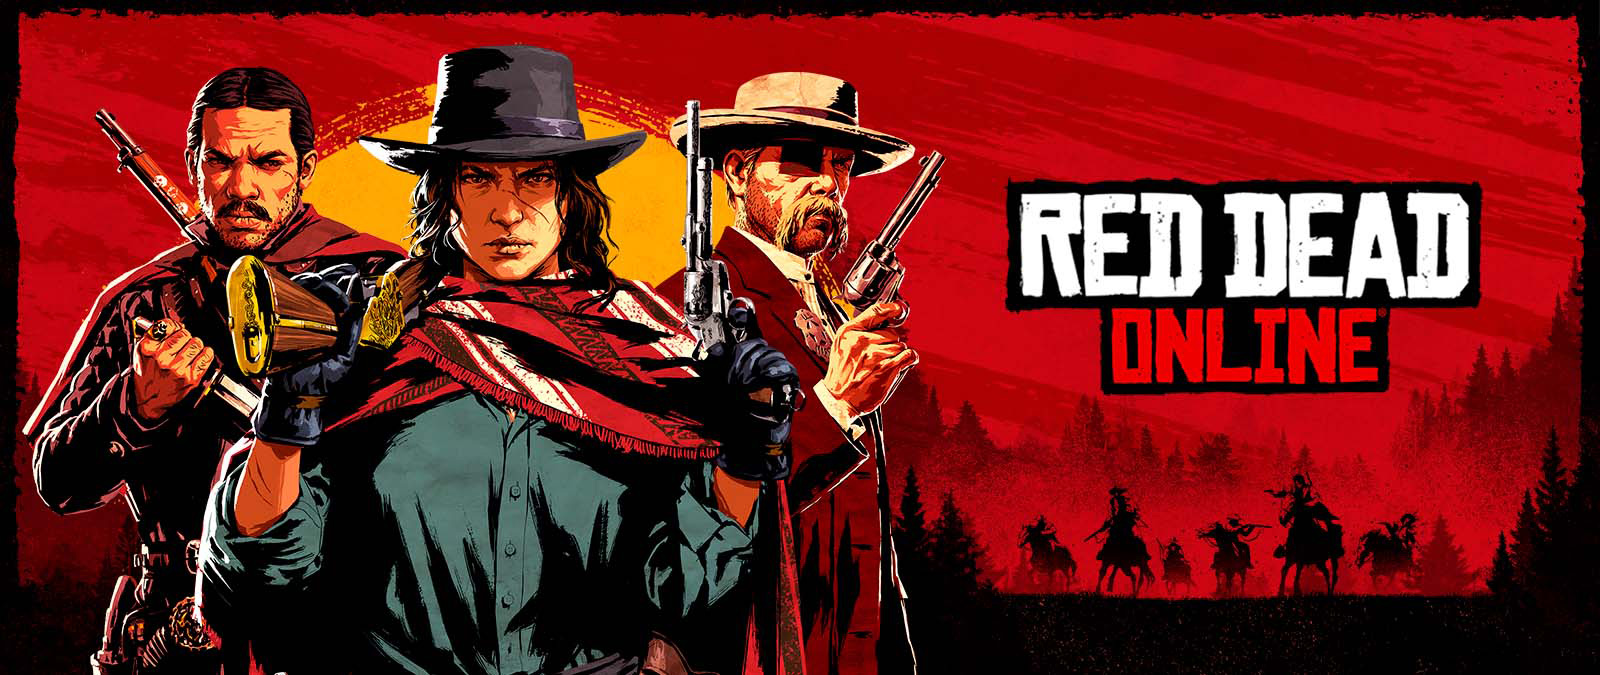 Red Dead Online. Drie personages met wapens voor een zonsondergang en schaduwen van andere personages op paarden